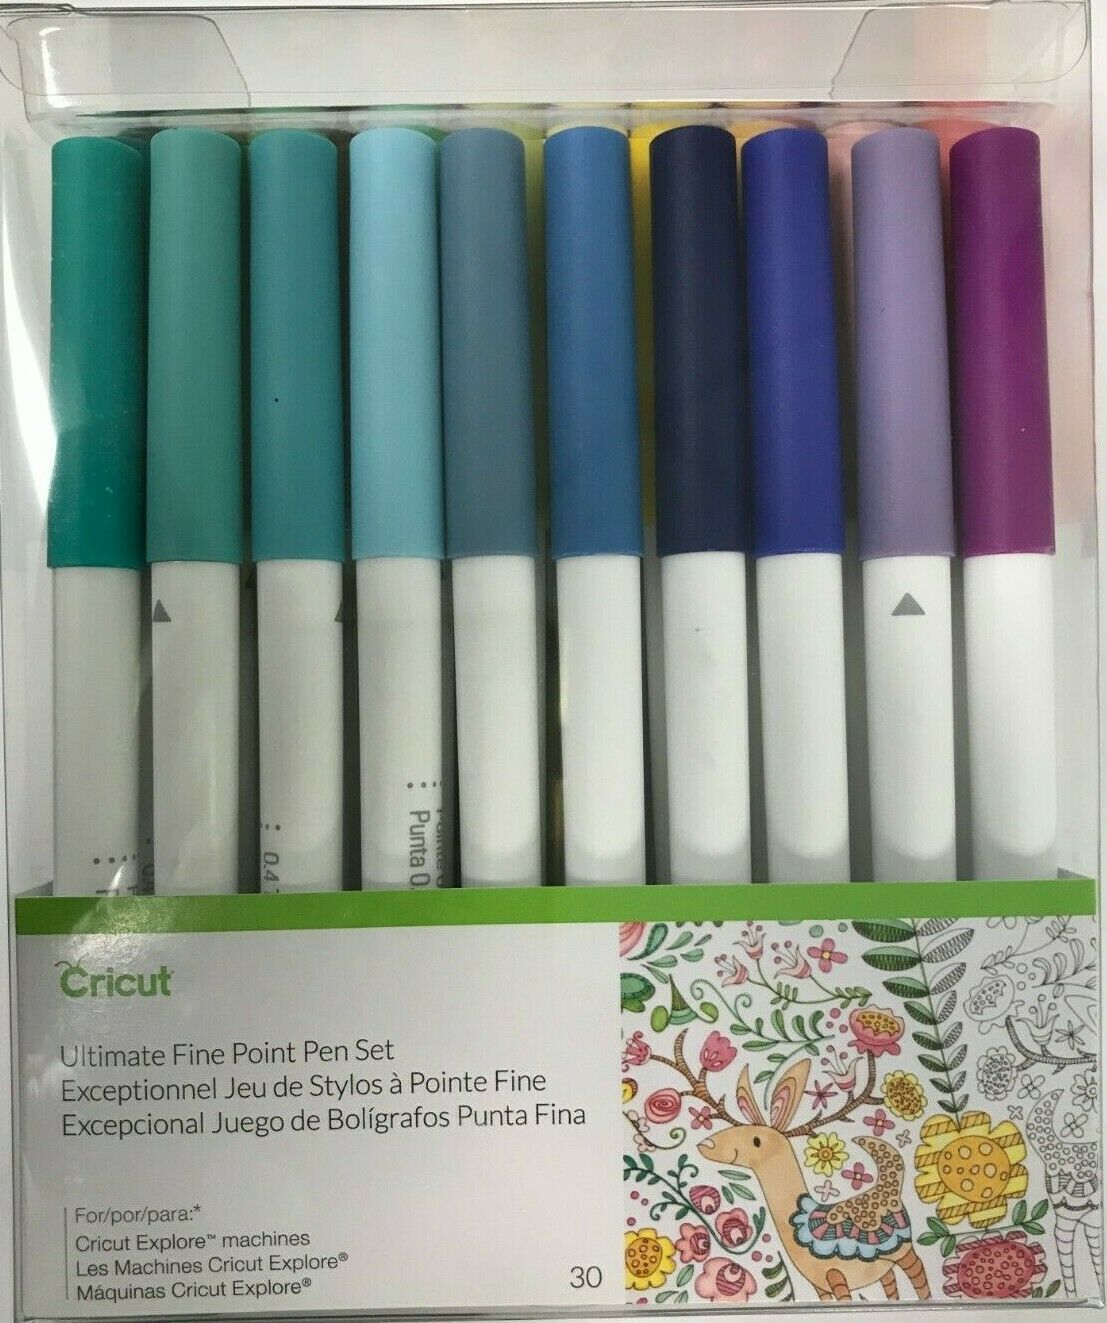 Cricut Ultimate Fine Point Pen Set 30 Explore Set Pack Pens Assorted 